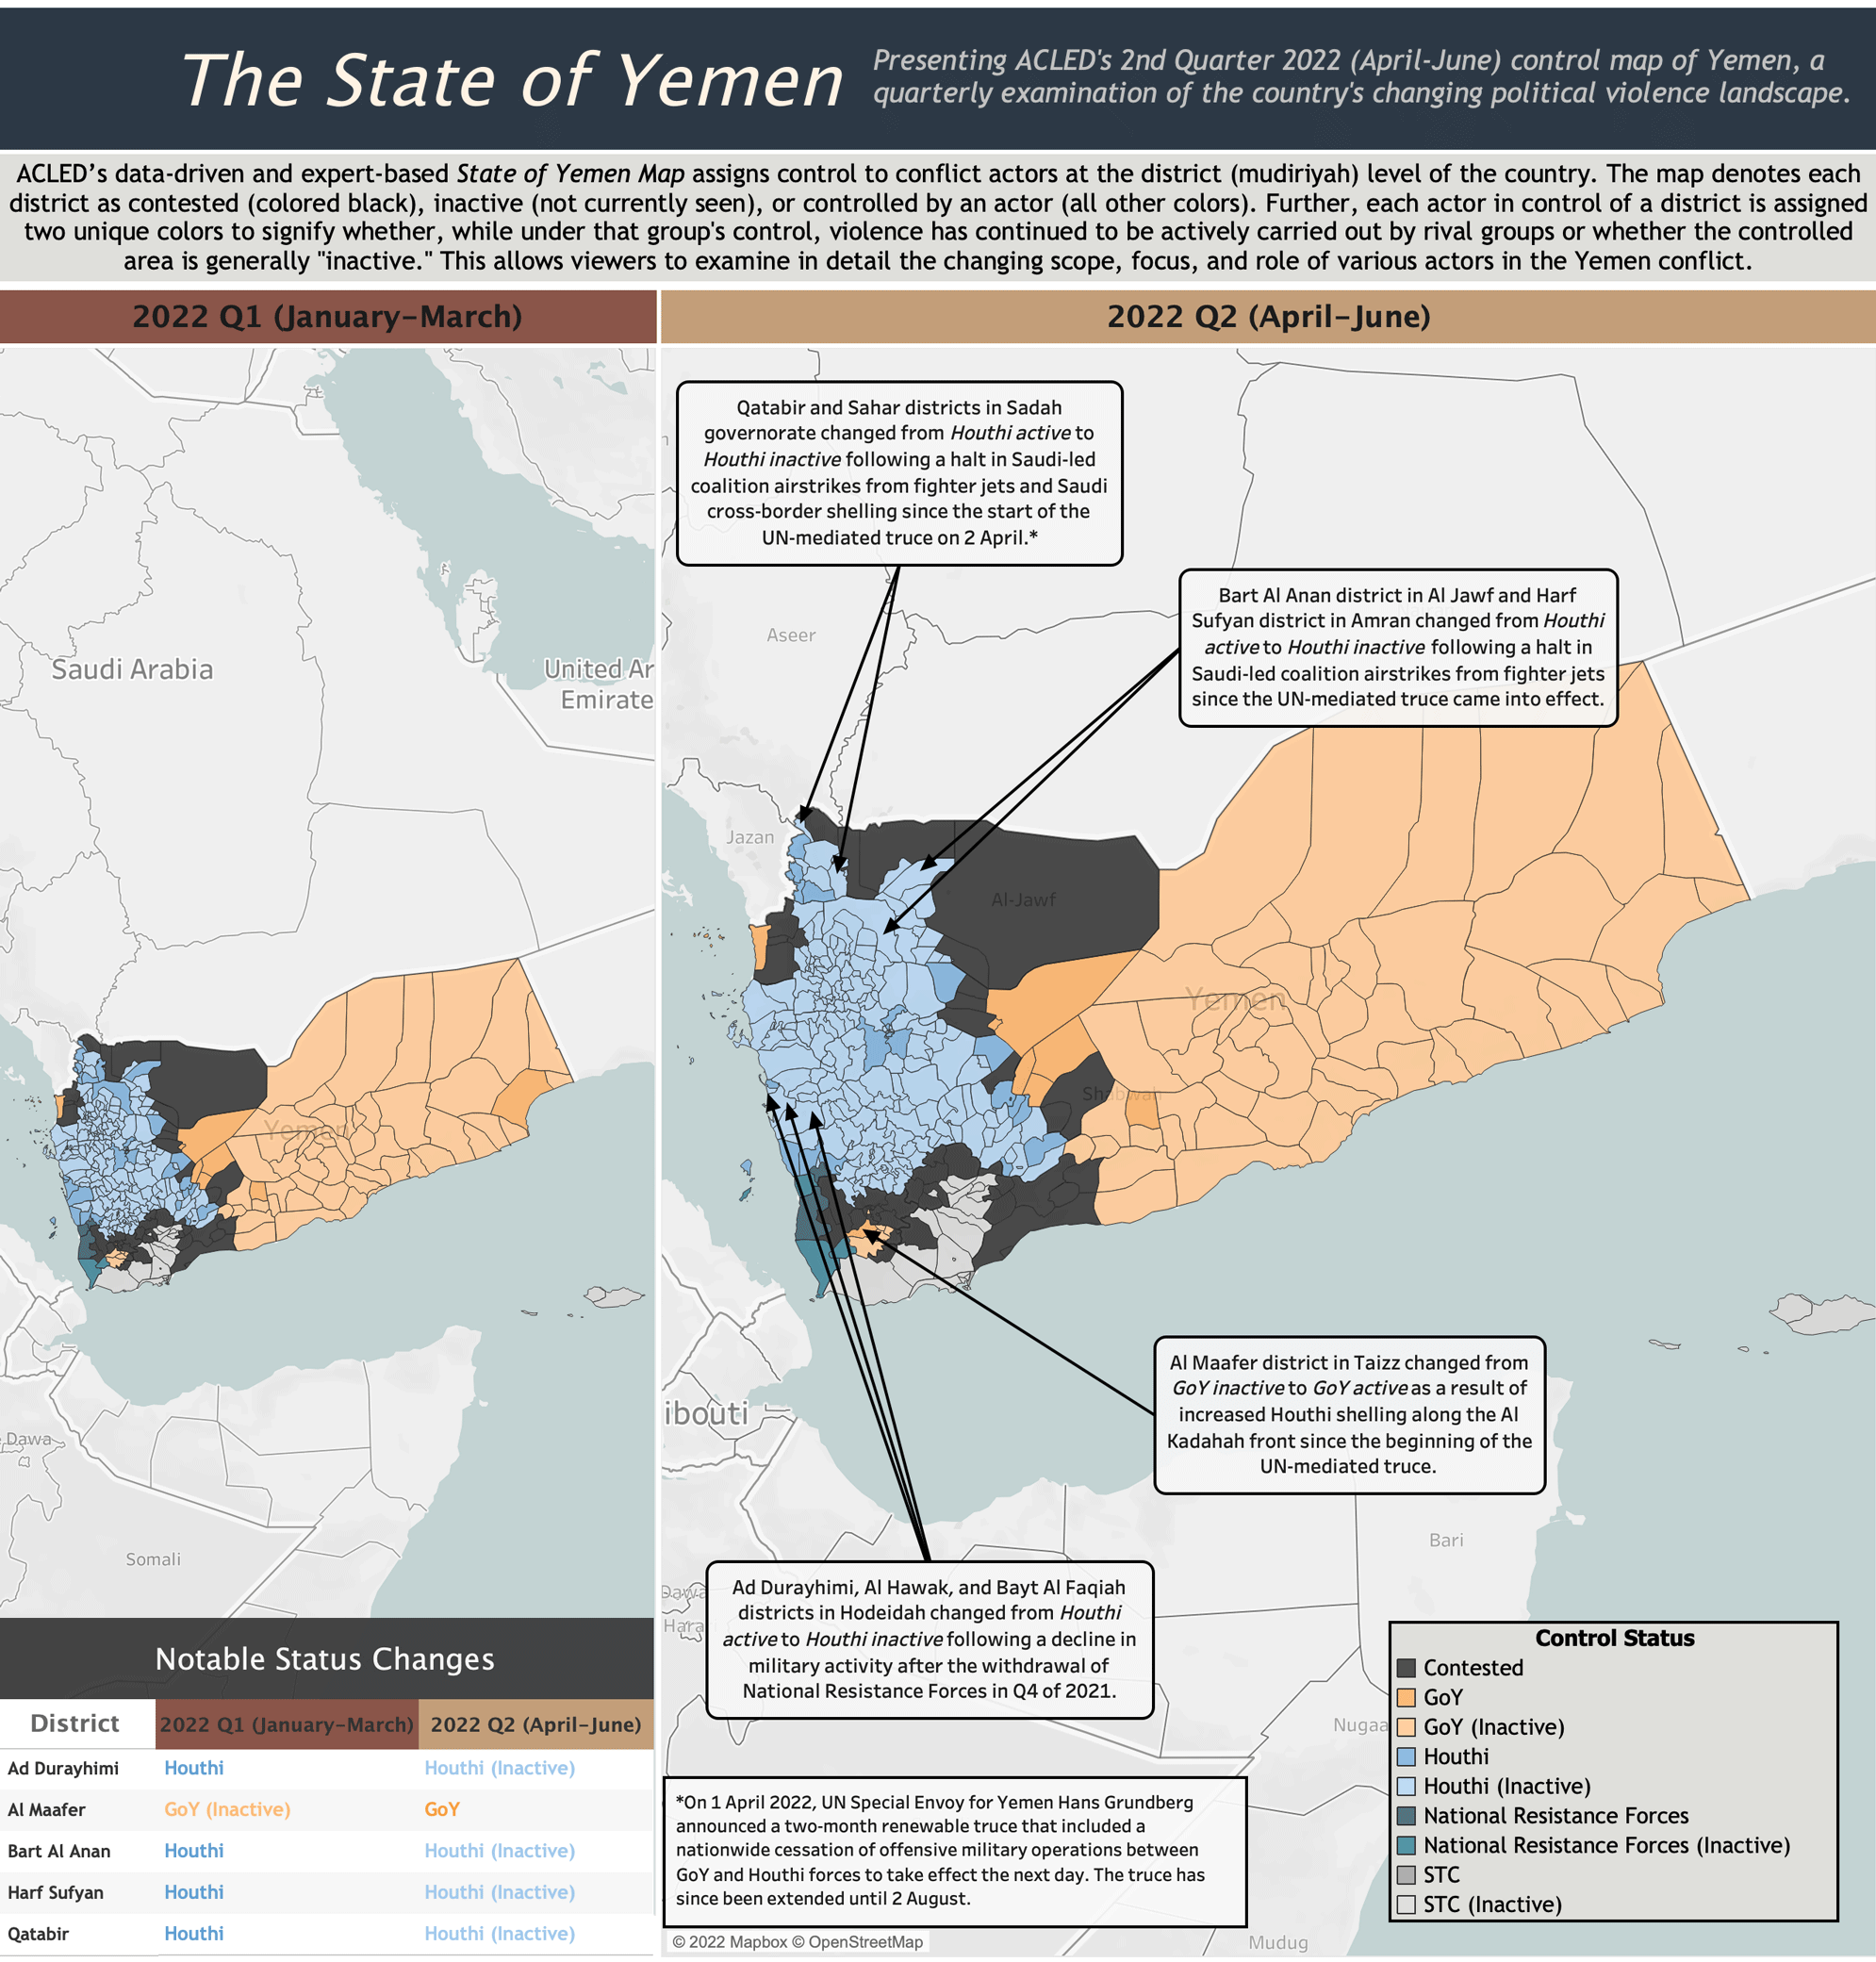 The State of Yemen: Q1 2022 - Q2 2022